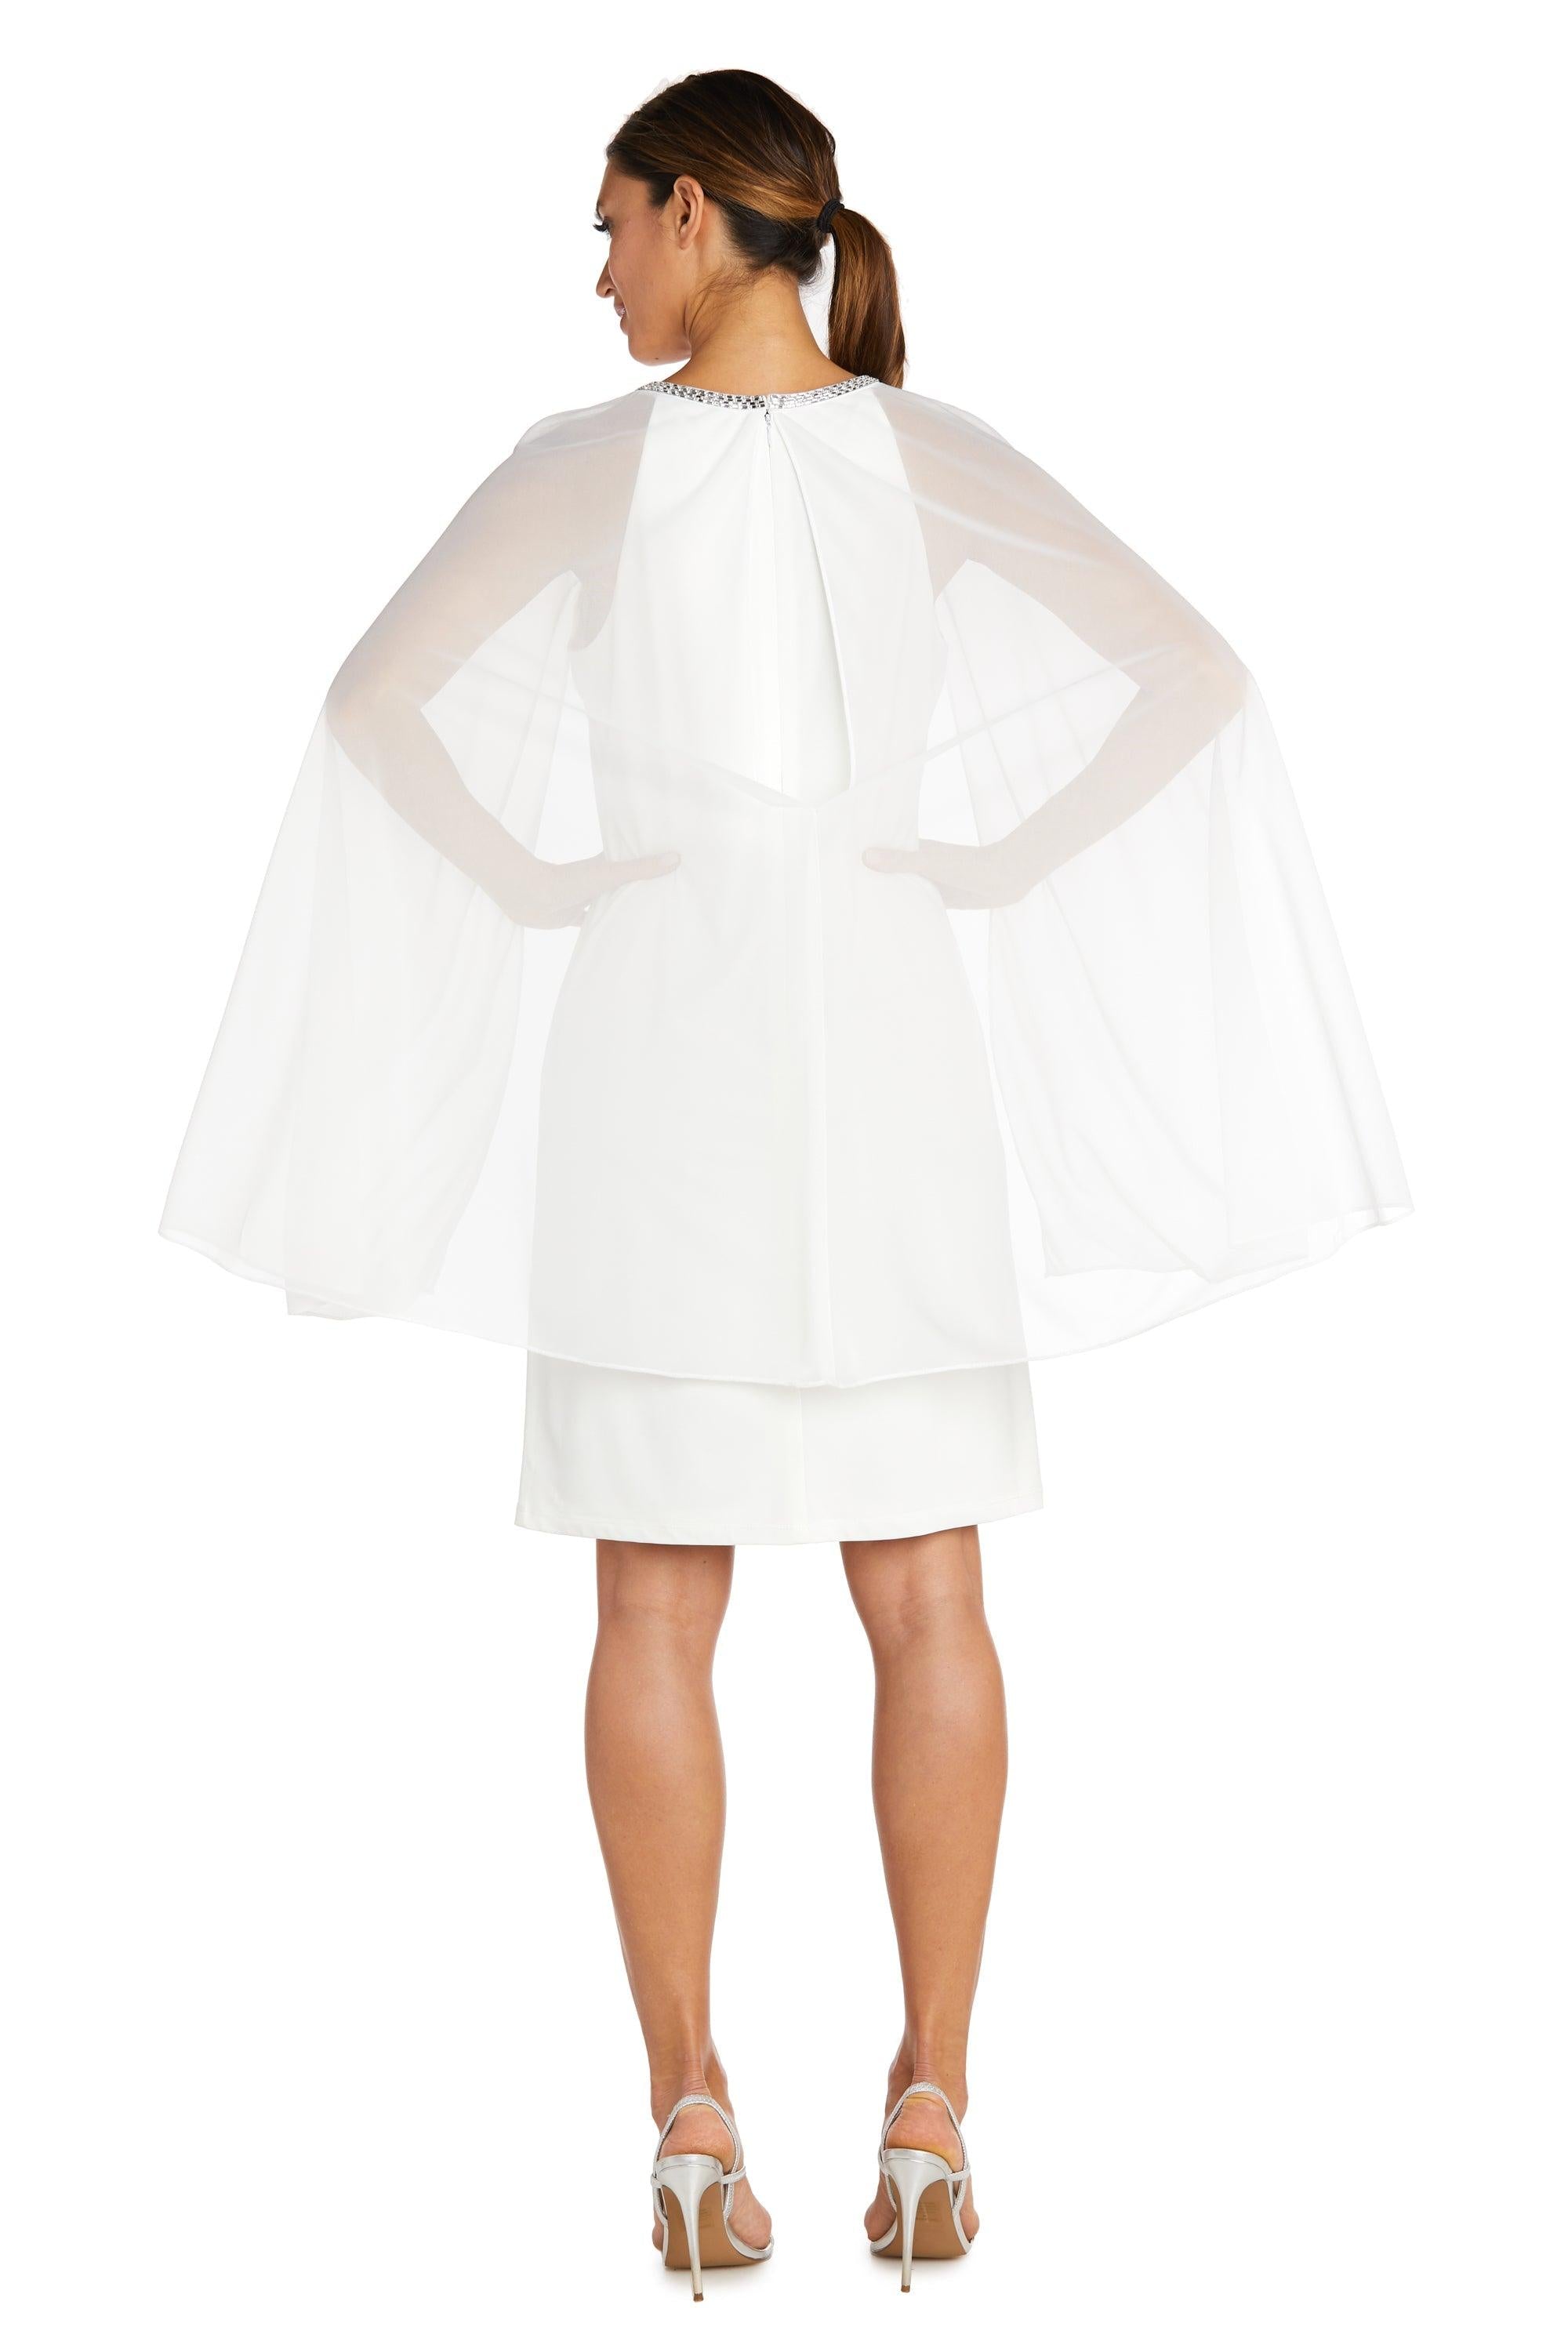 R&M Richards Short Petite Chiffon Dress 2496P - The Dress Outlet